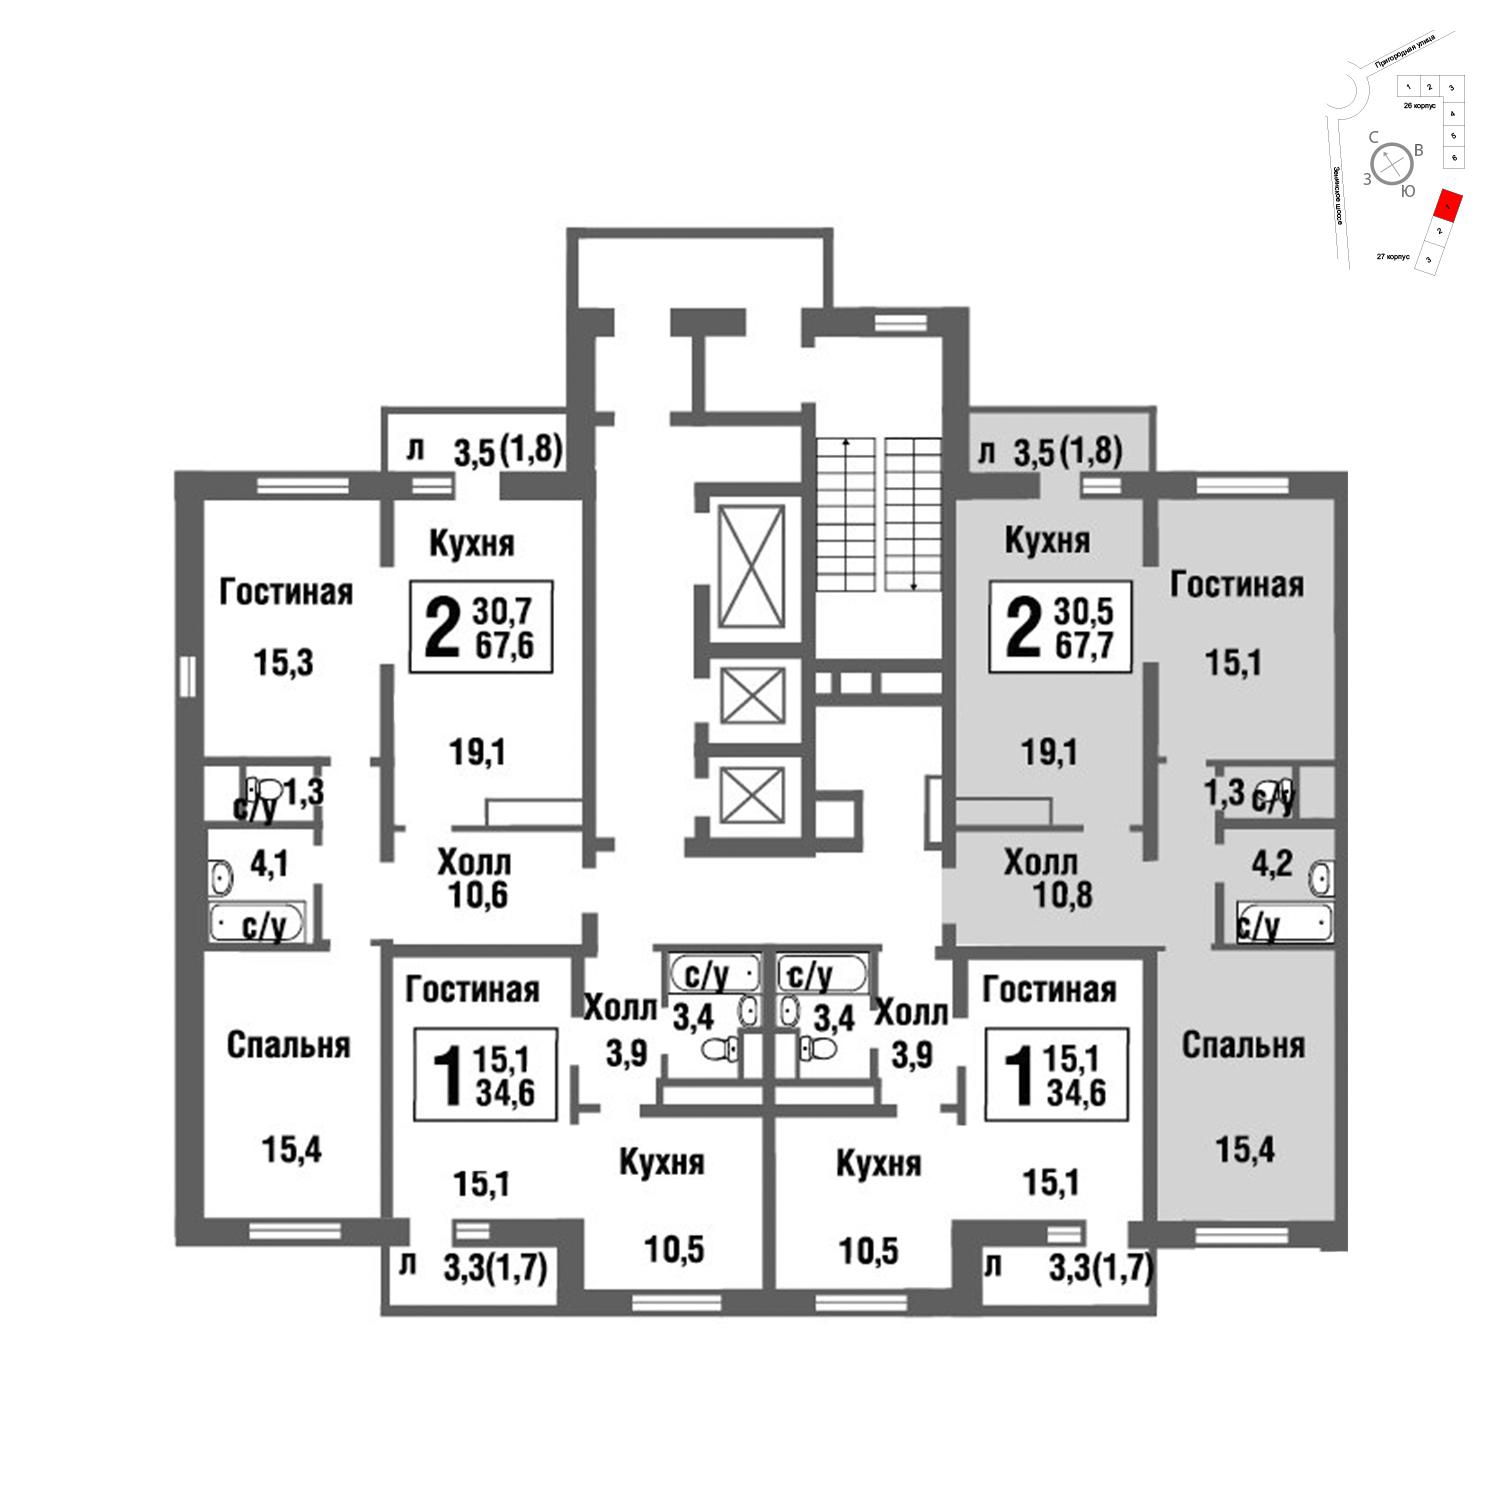 Продаётся 2-комнатная квартира в новостройке 67.9 кв.м. этаж 22/22 за 6 392 785 руб 